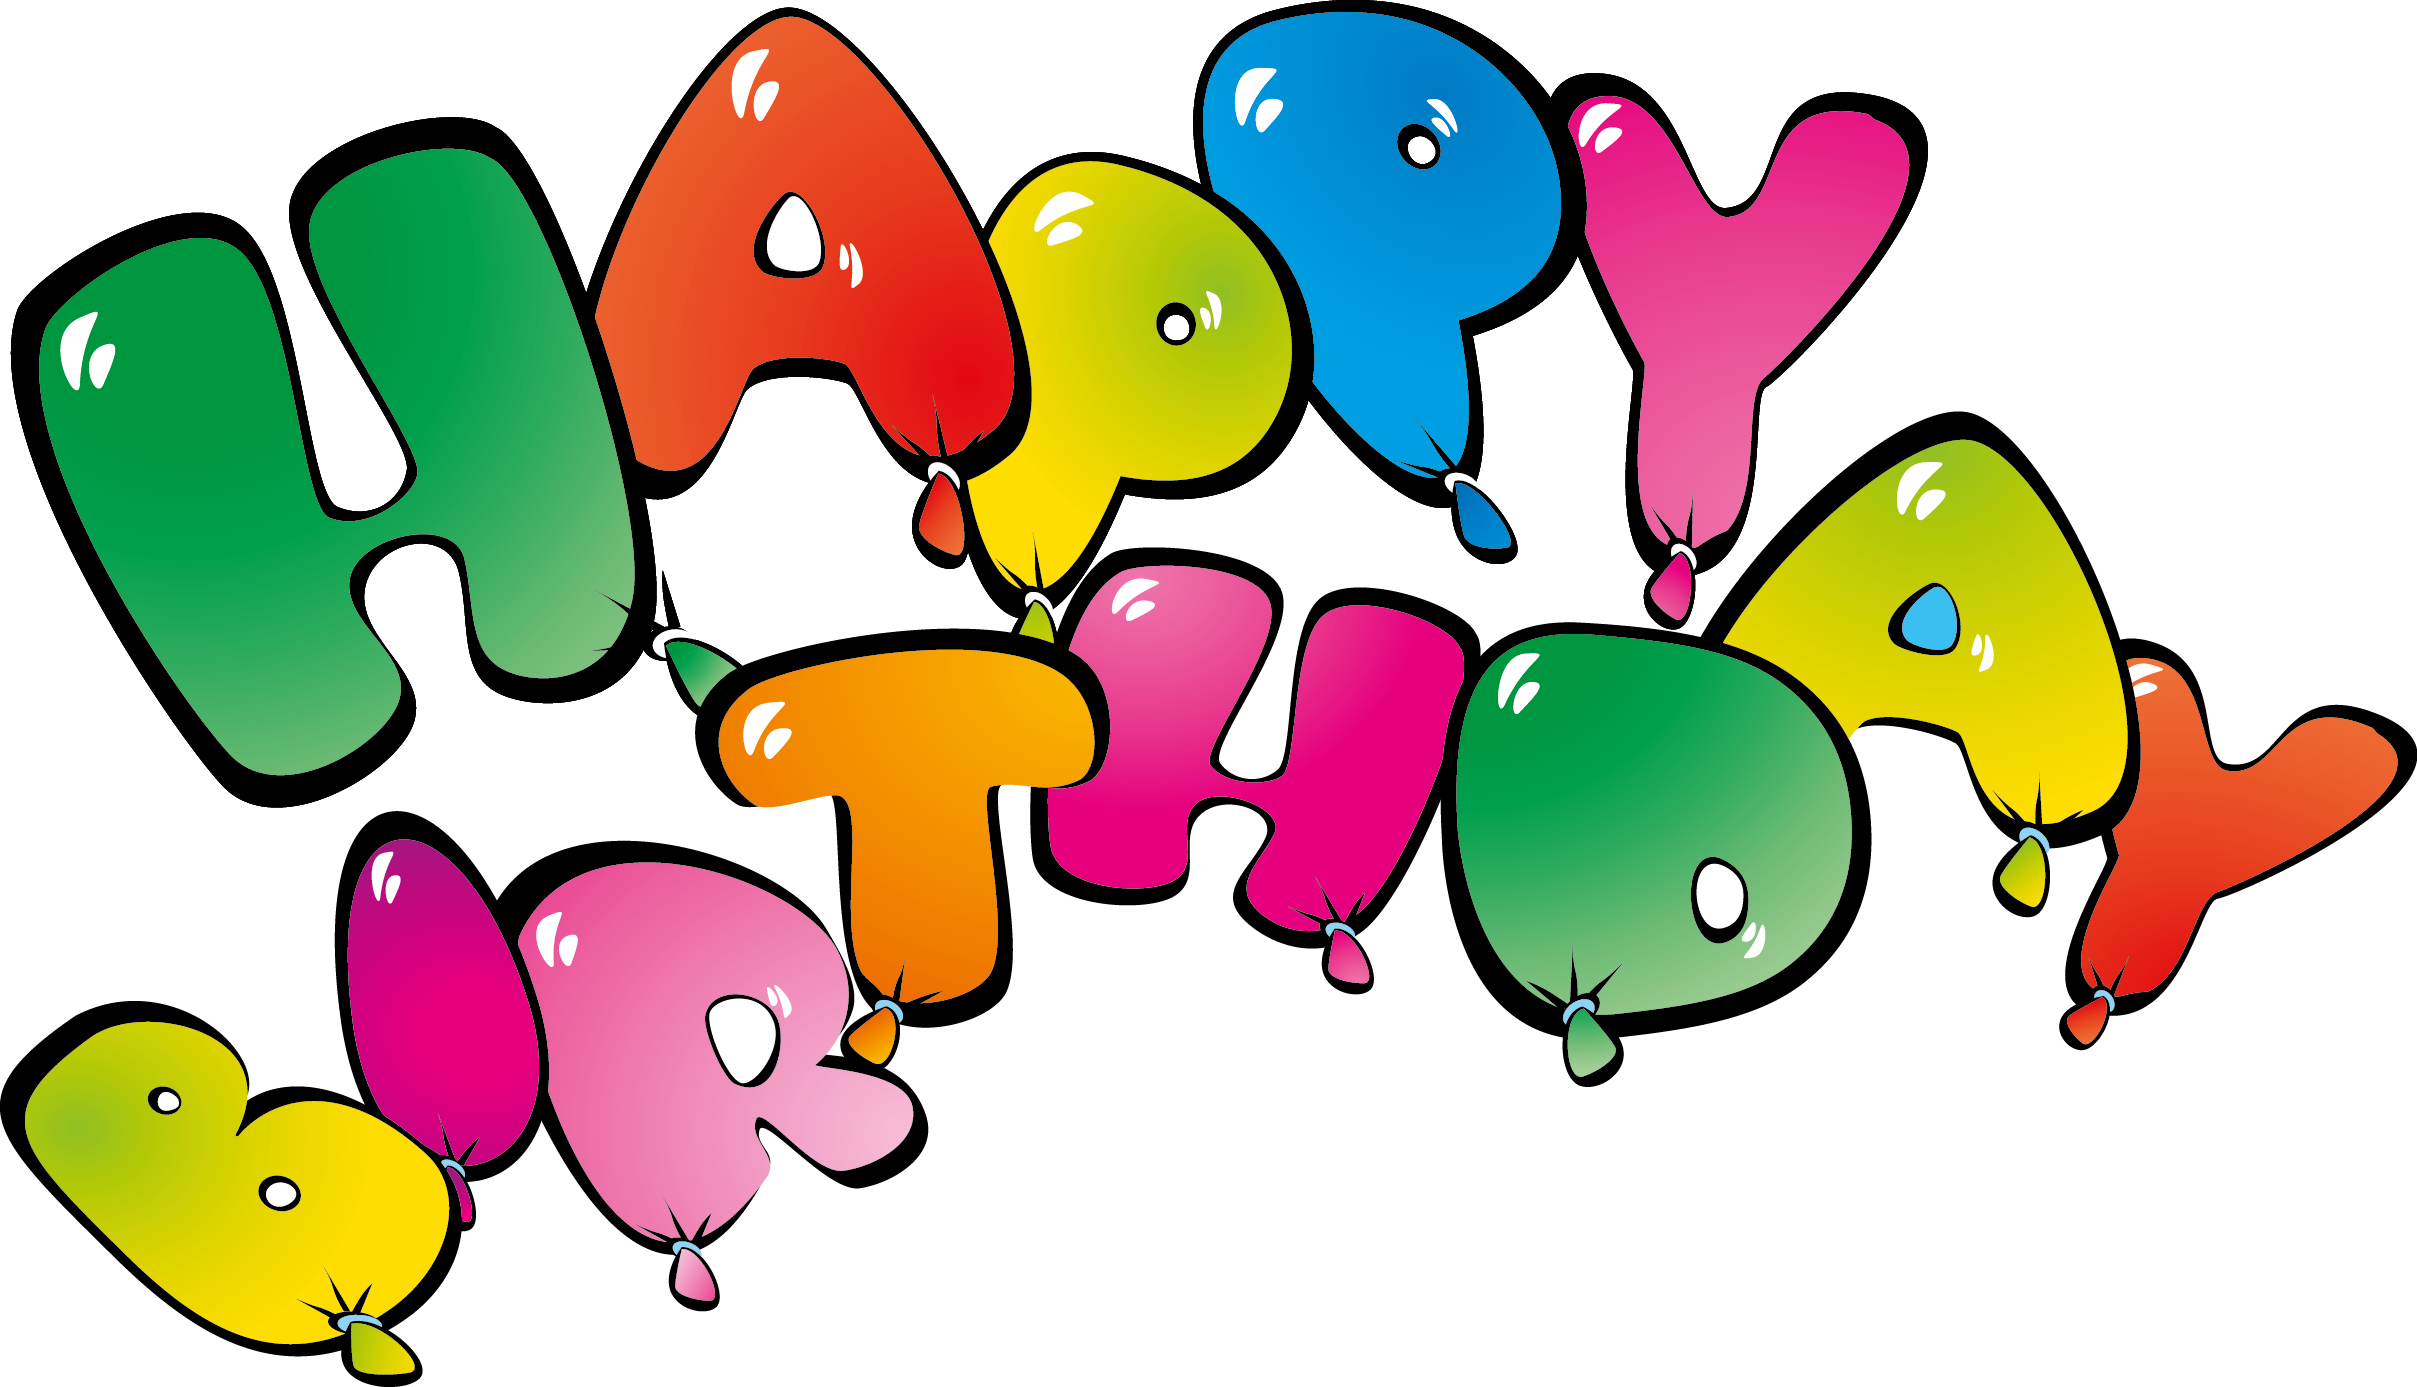 Плакат На Др Happy Birthday Ballons, Happy Birthday - Плакат На Др Happy Birthday Ballons, Happy Birthday (2417x1387)